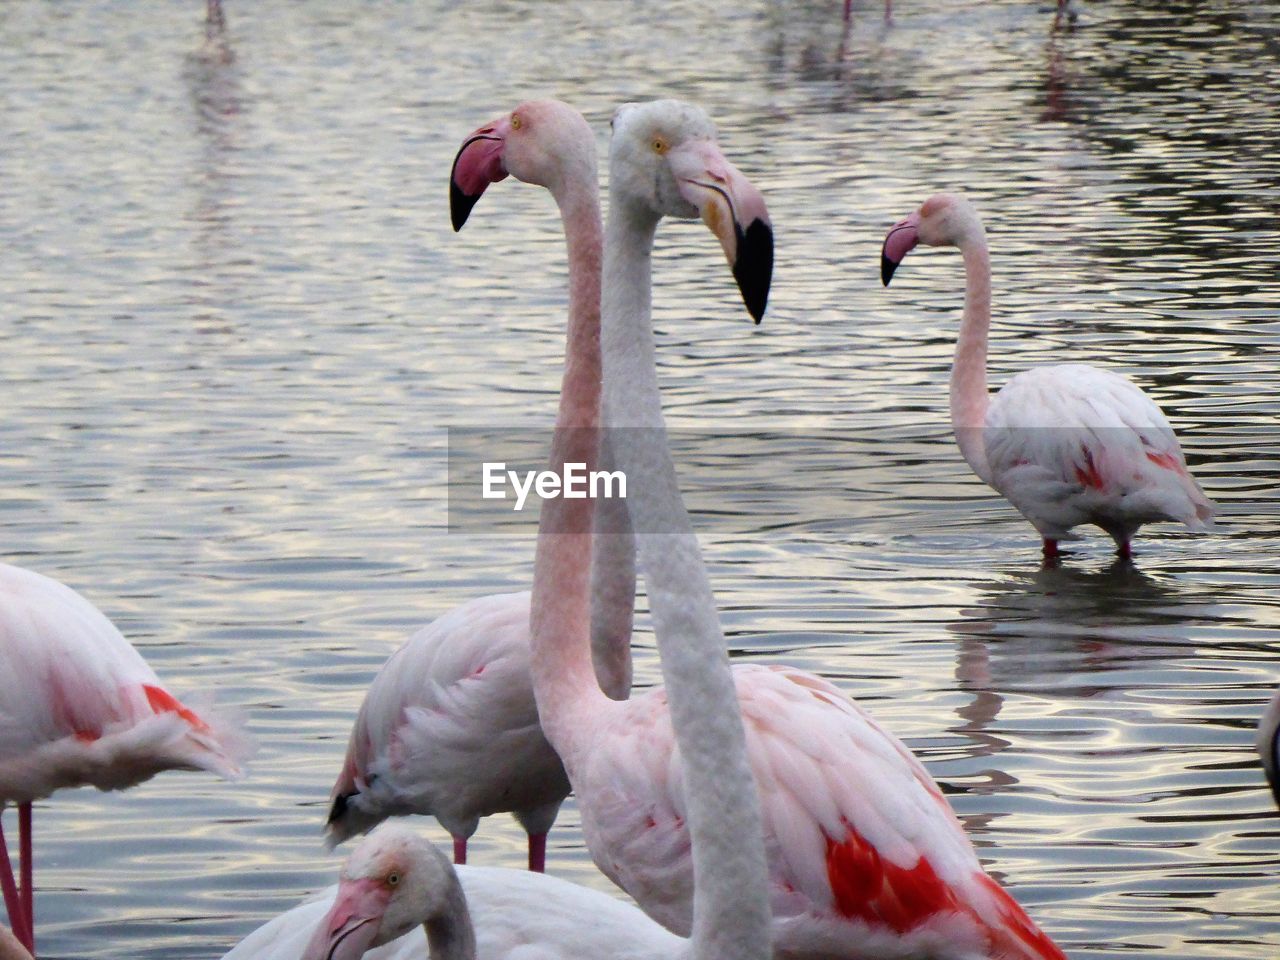 Pink  flamingos